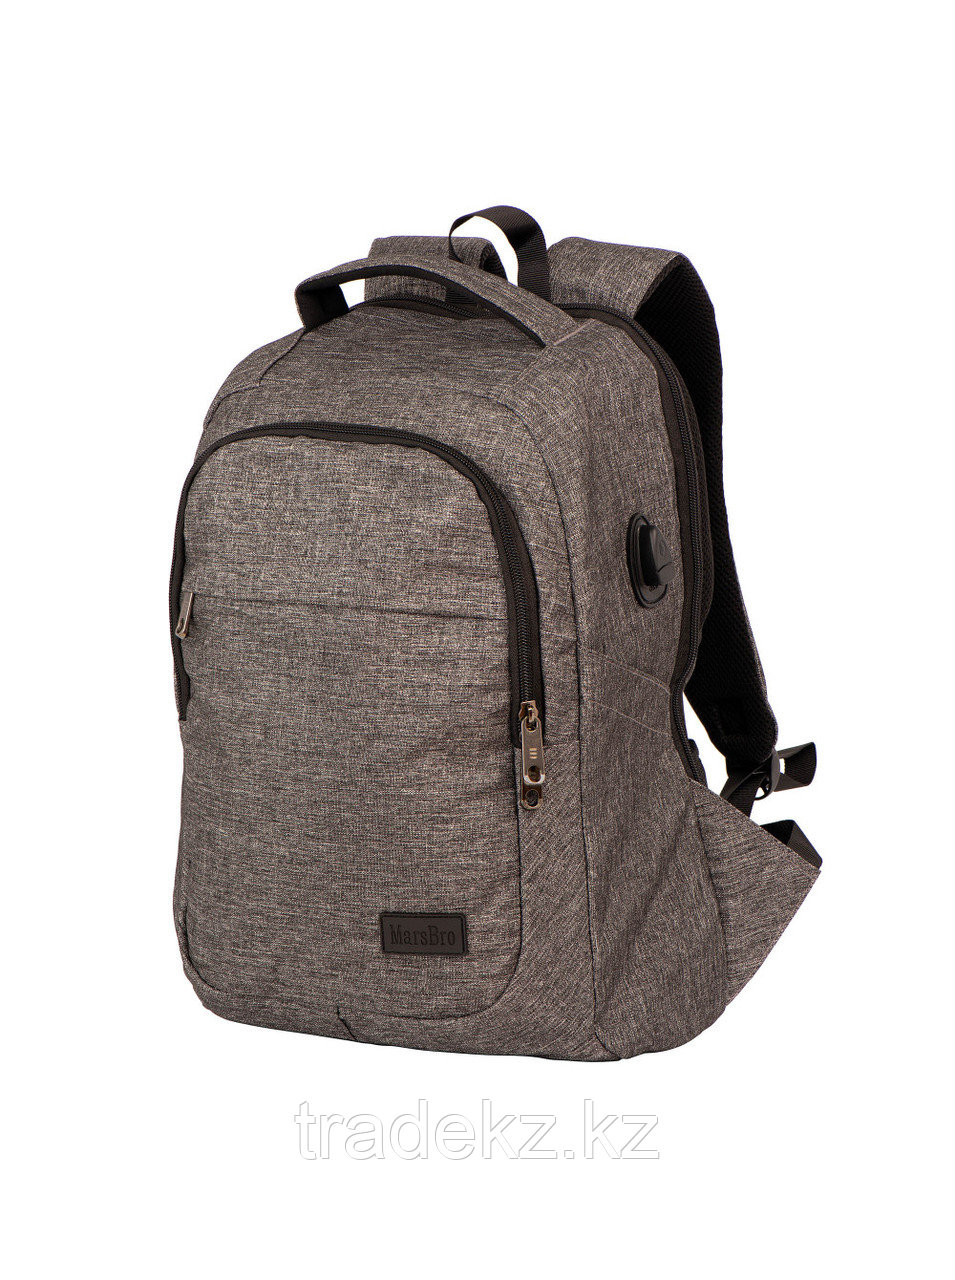 Рюкзак MarsBro Business Laptop, 5335А4, цвет серый, размер 40*30*15, объем 30 л.